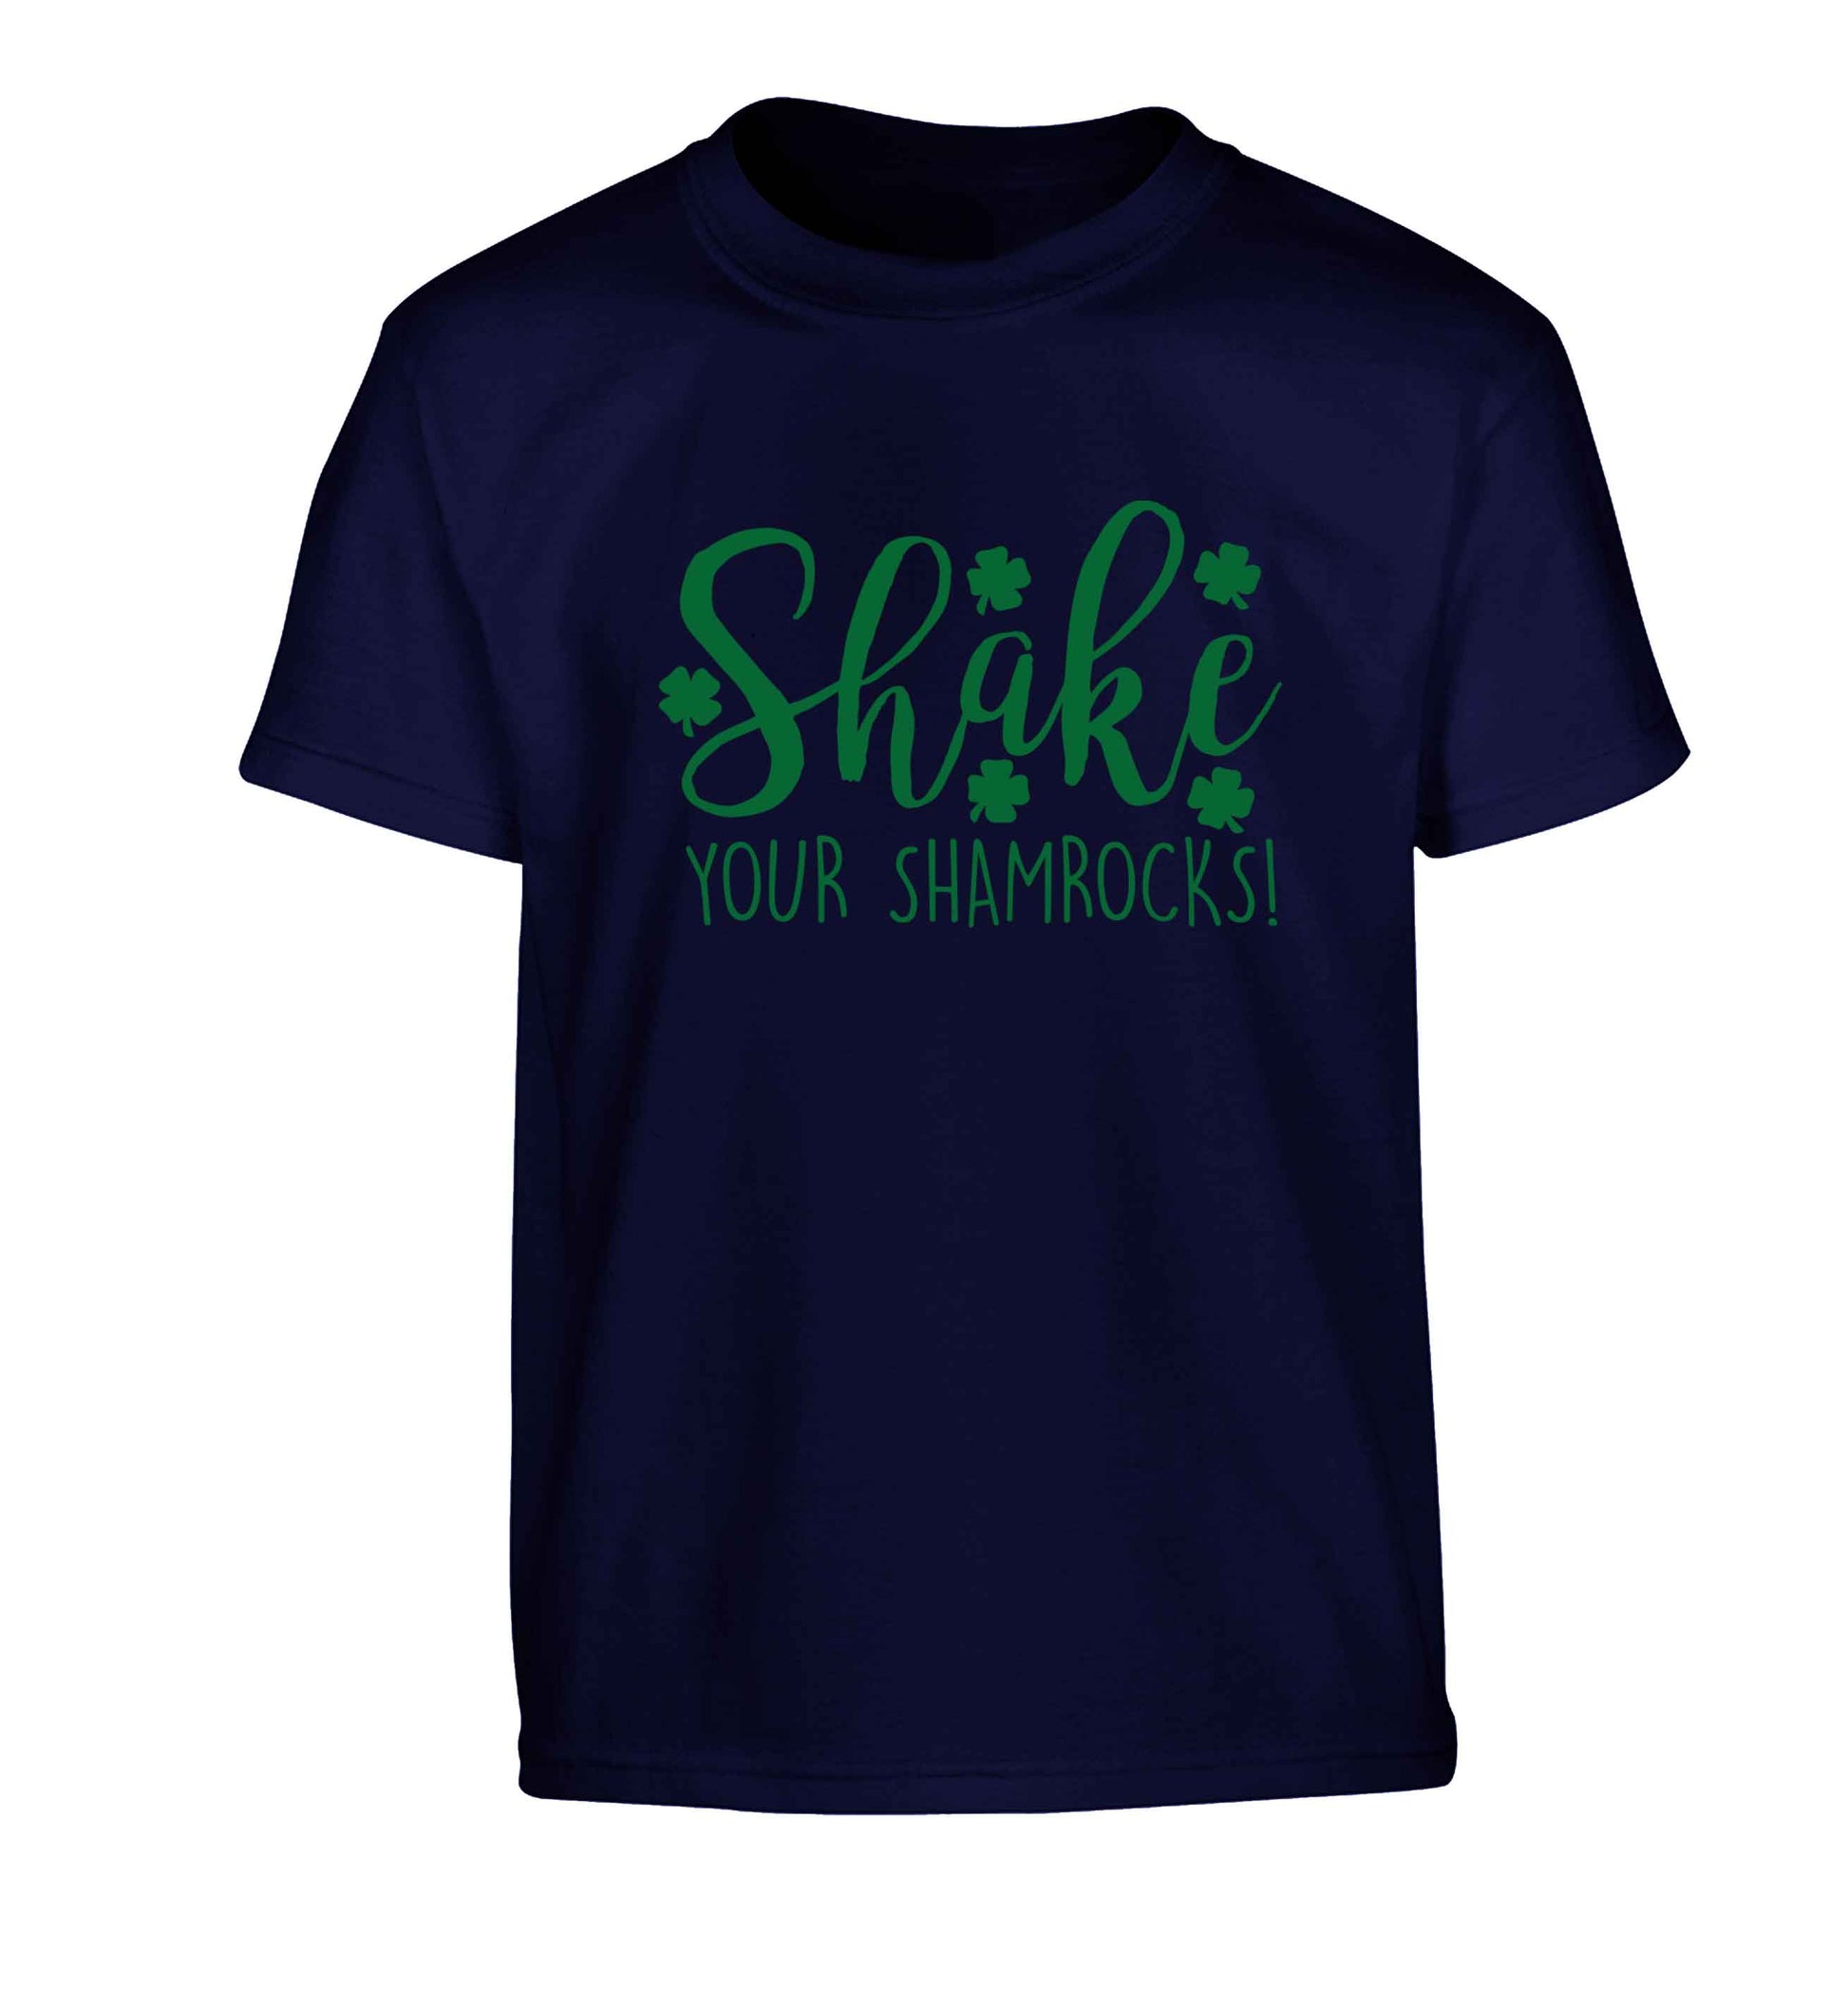 Shake your shamrocks Children's navy Tshirt 12-13 Years